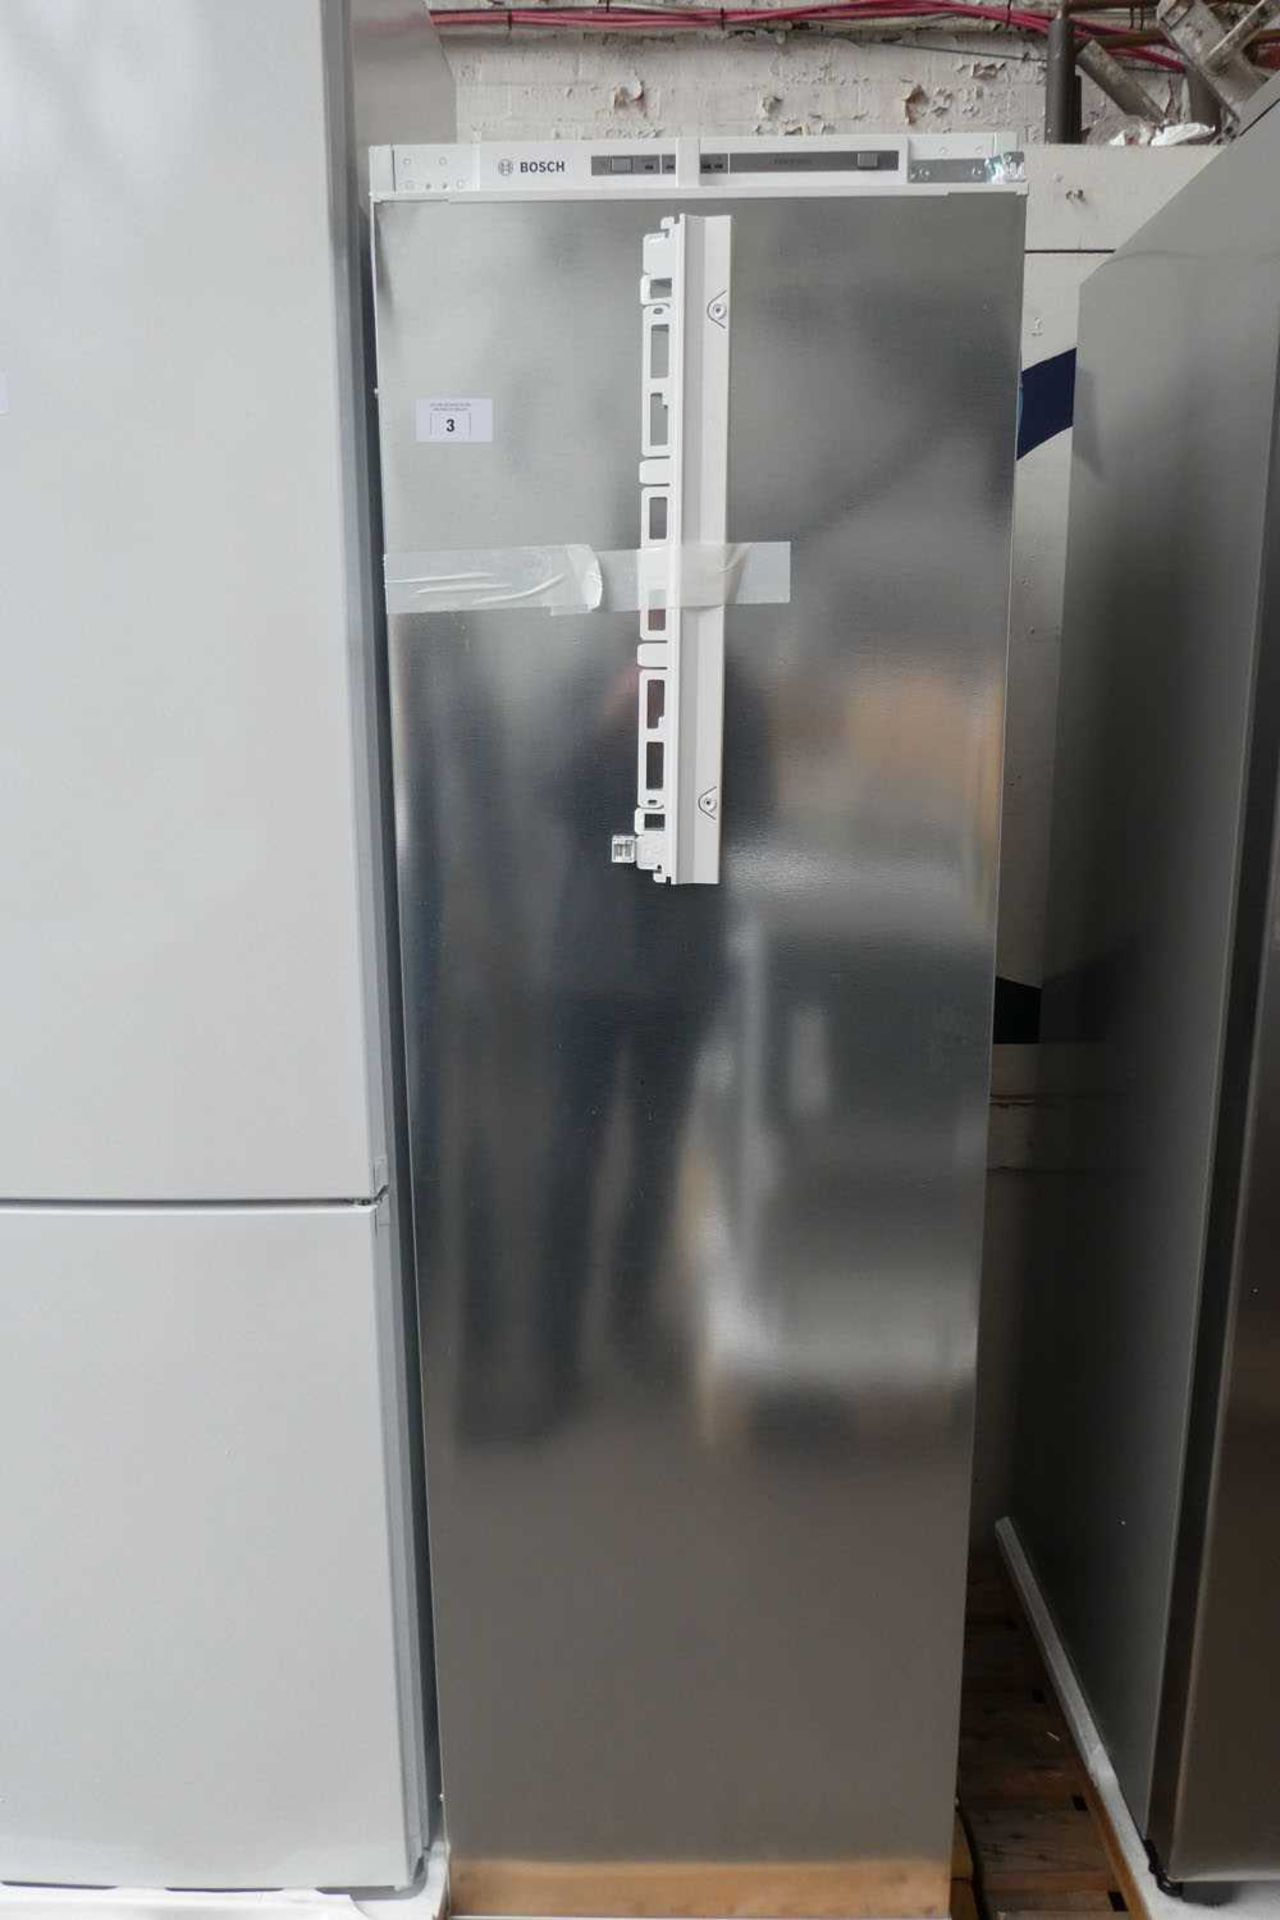 +VAT KIL82VSF0-B Bosch Built-in larder fridge